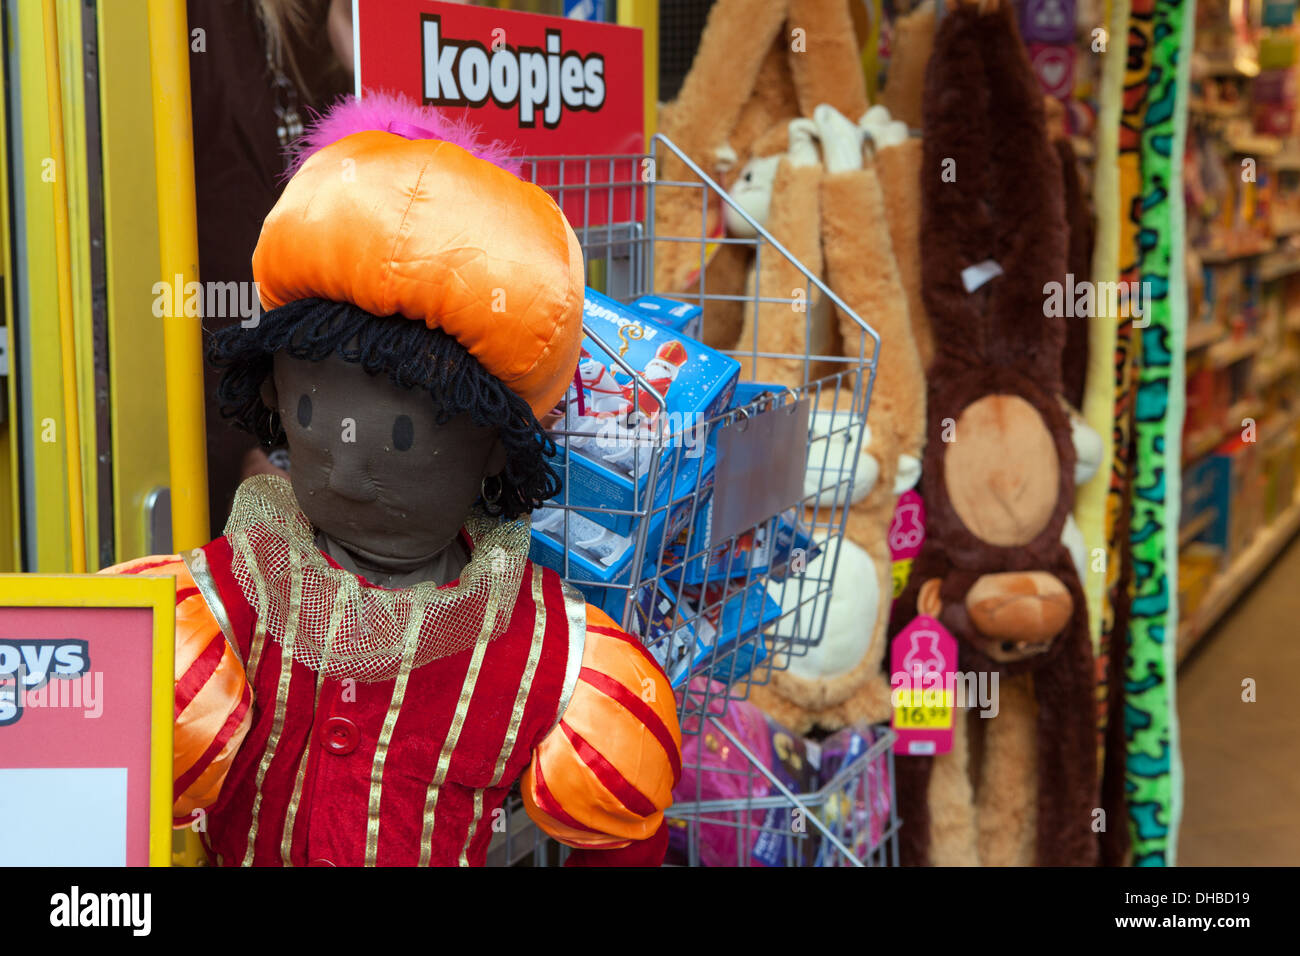 Zwarte Piet jouet dans un magasin de jouets à Knokke, Flandre orientale,  Belgique Photo Stock - Alamy